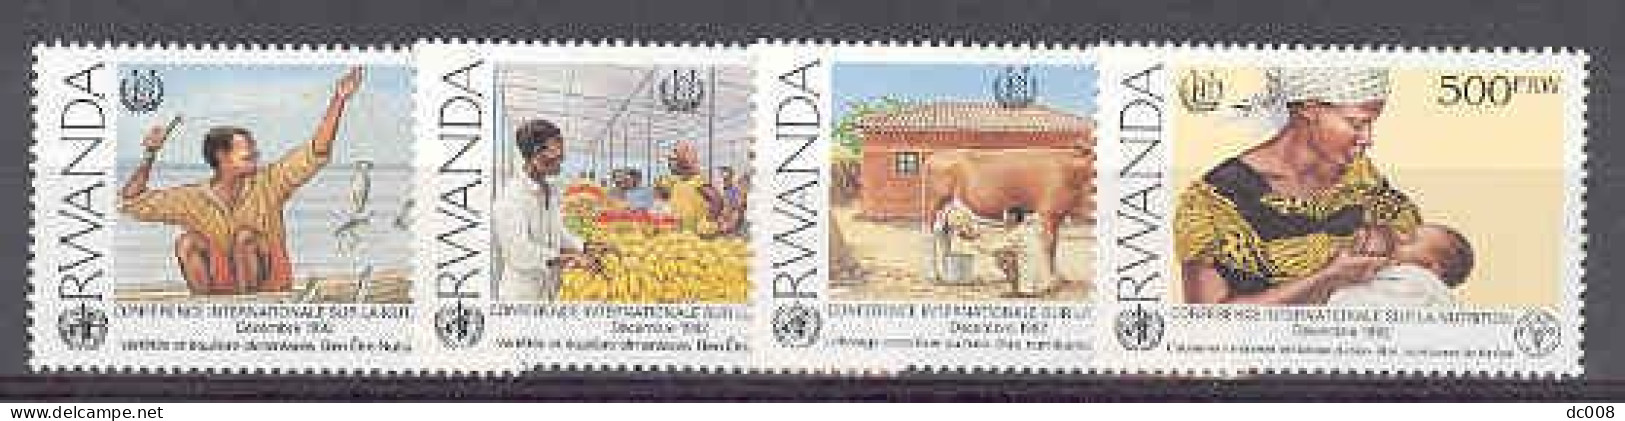 Rwanda COB 1392/95 Voedselvoorziening-Nutrition MNH-postfris-neuf - Nuovi